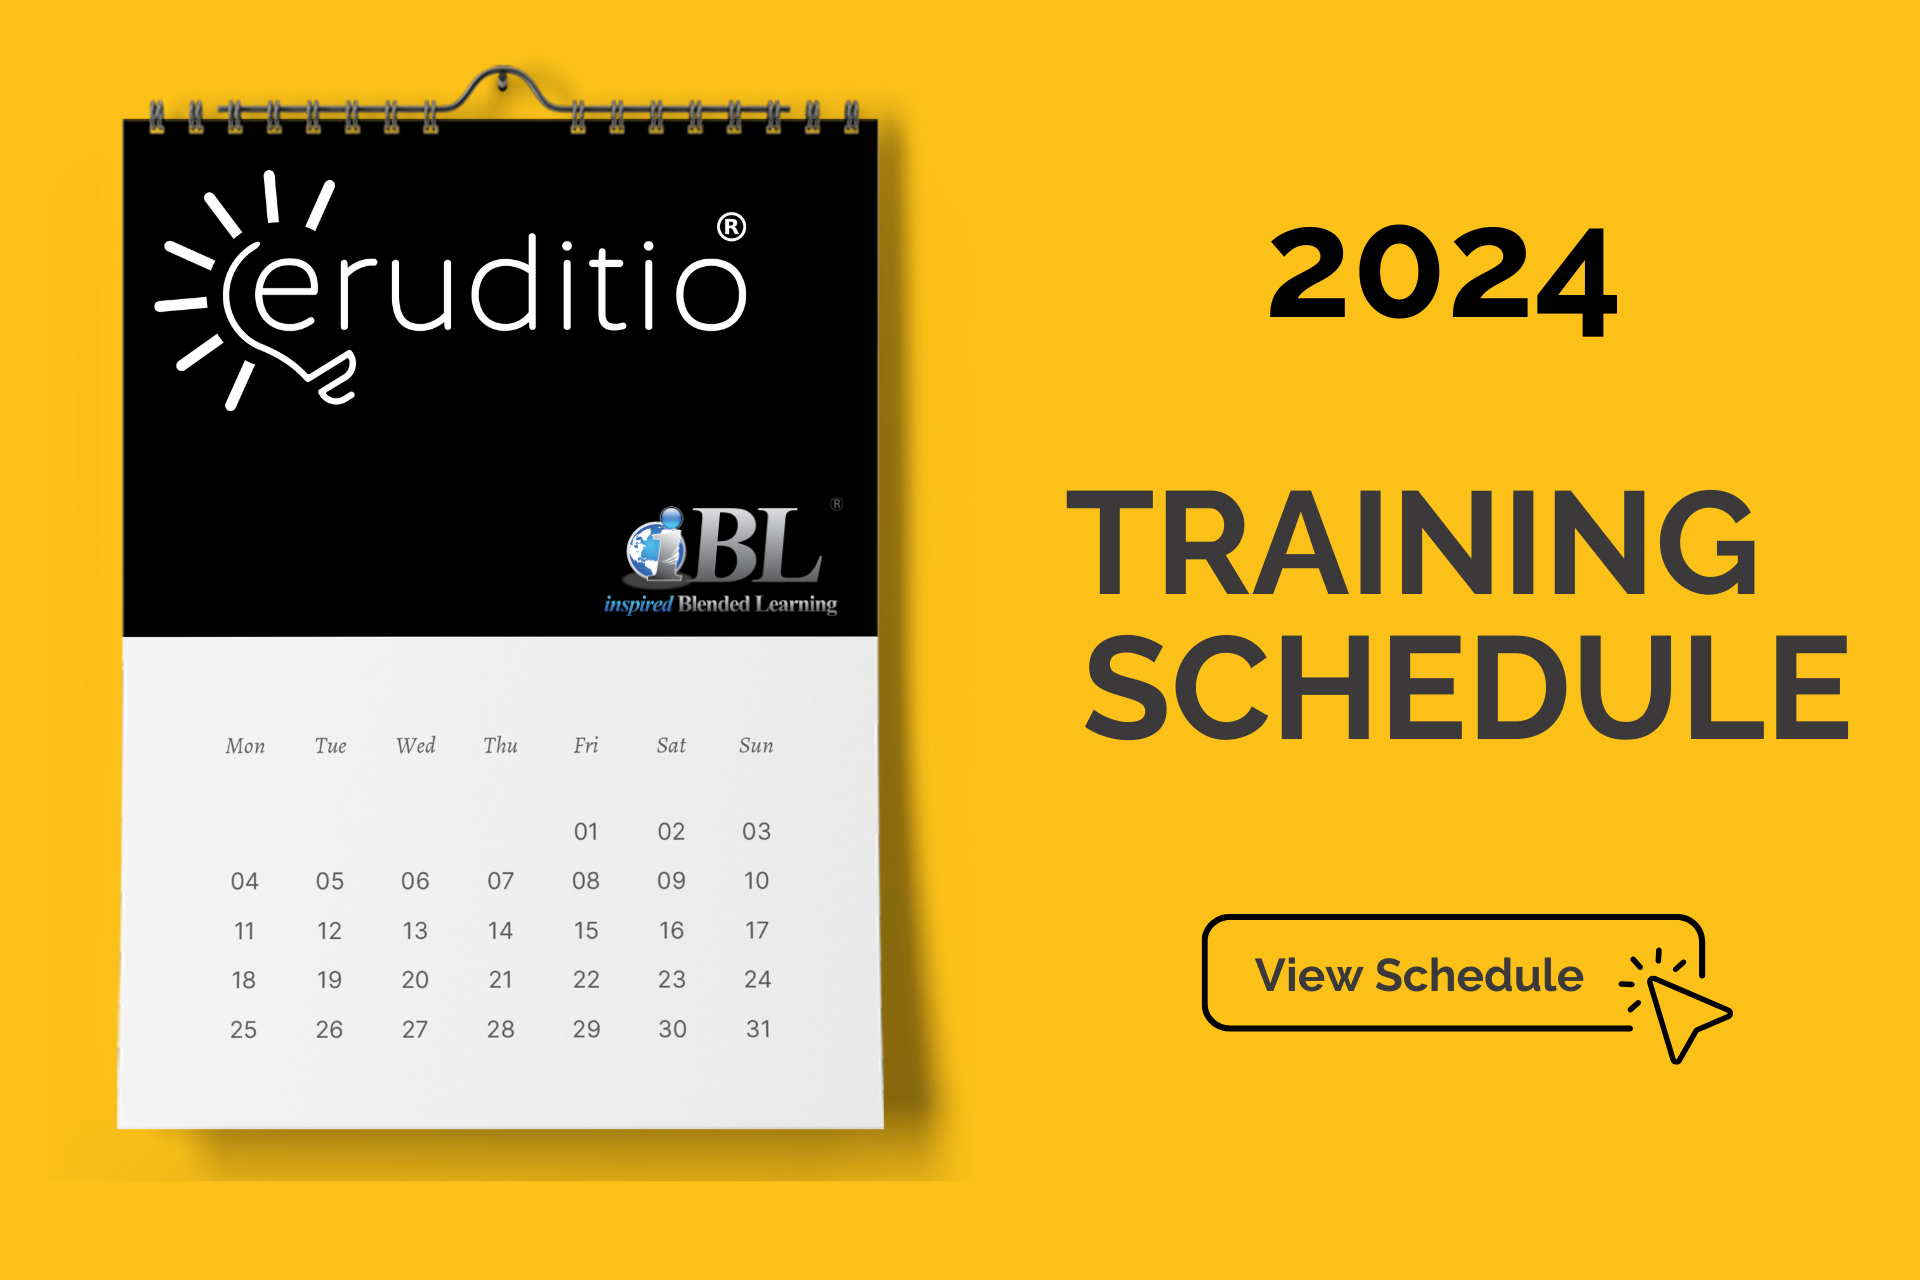 Training Schedule